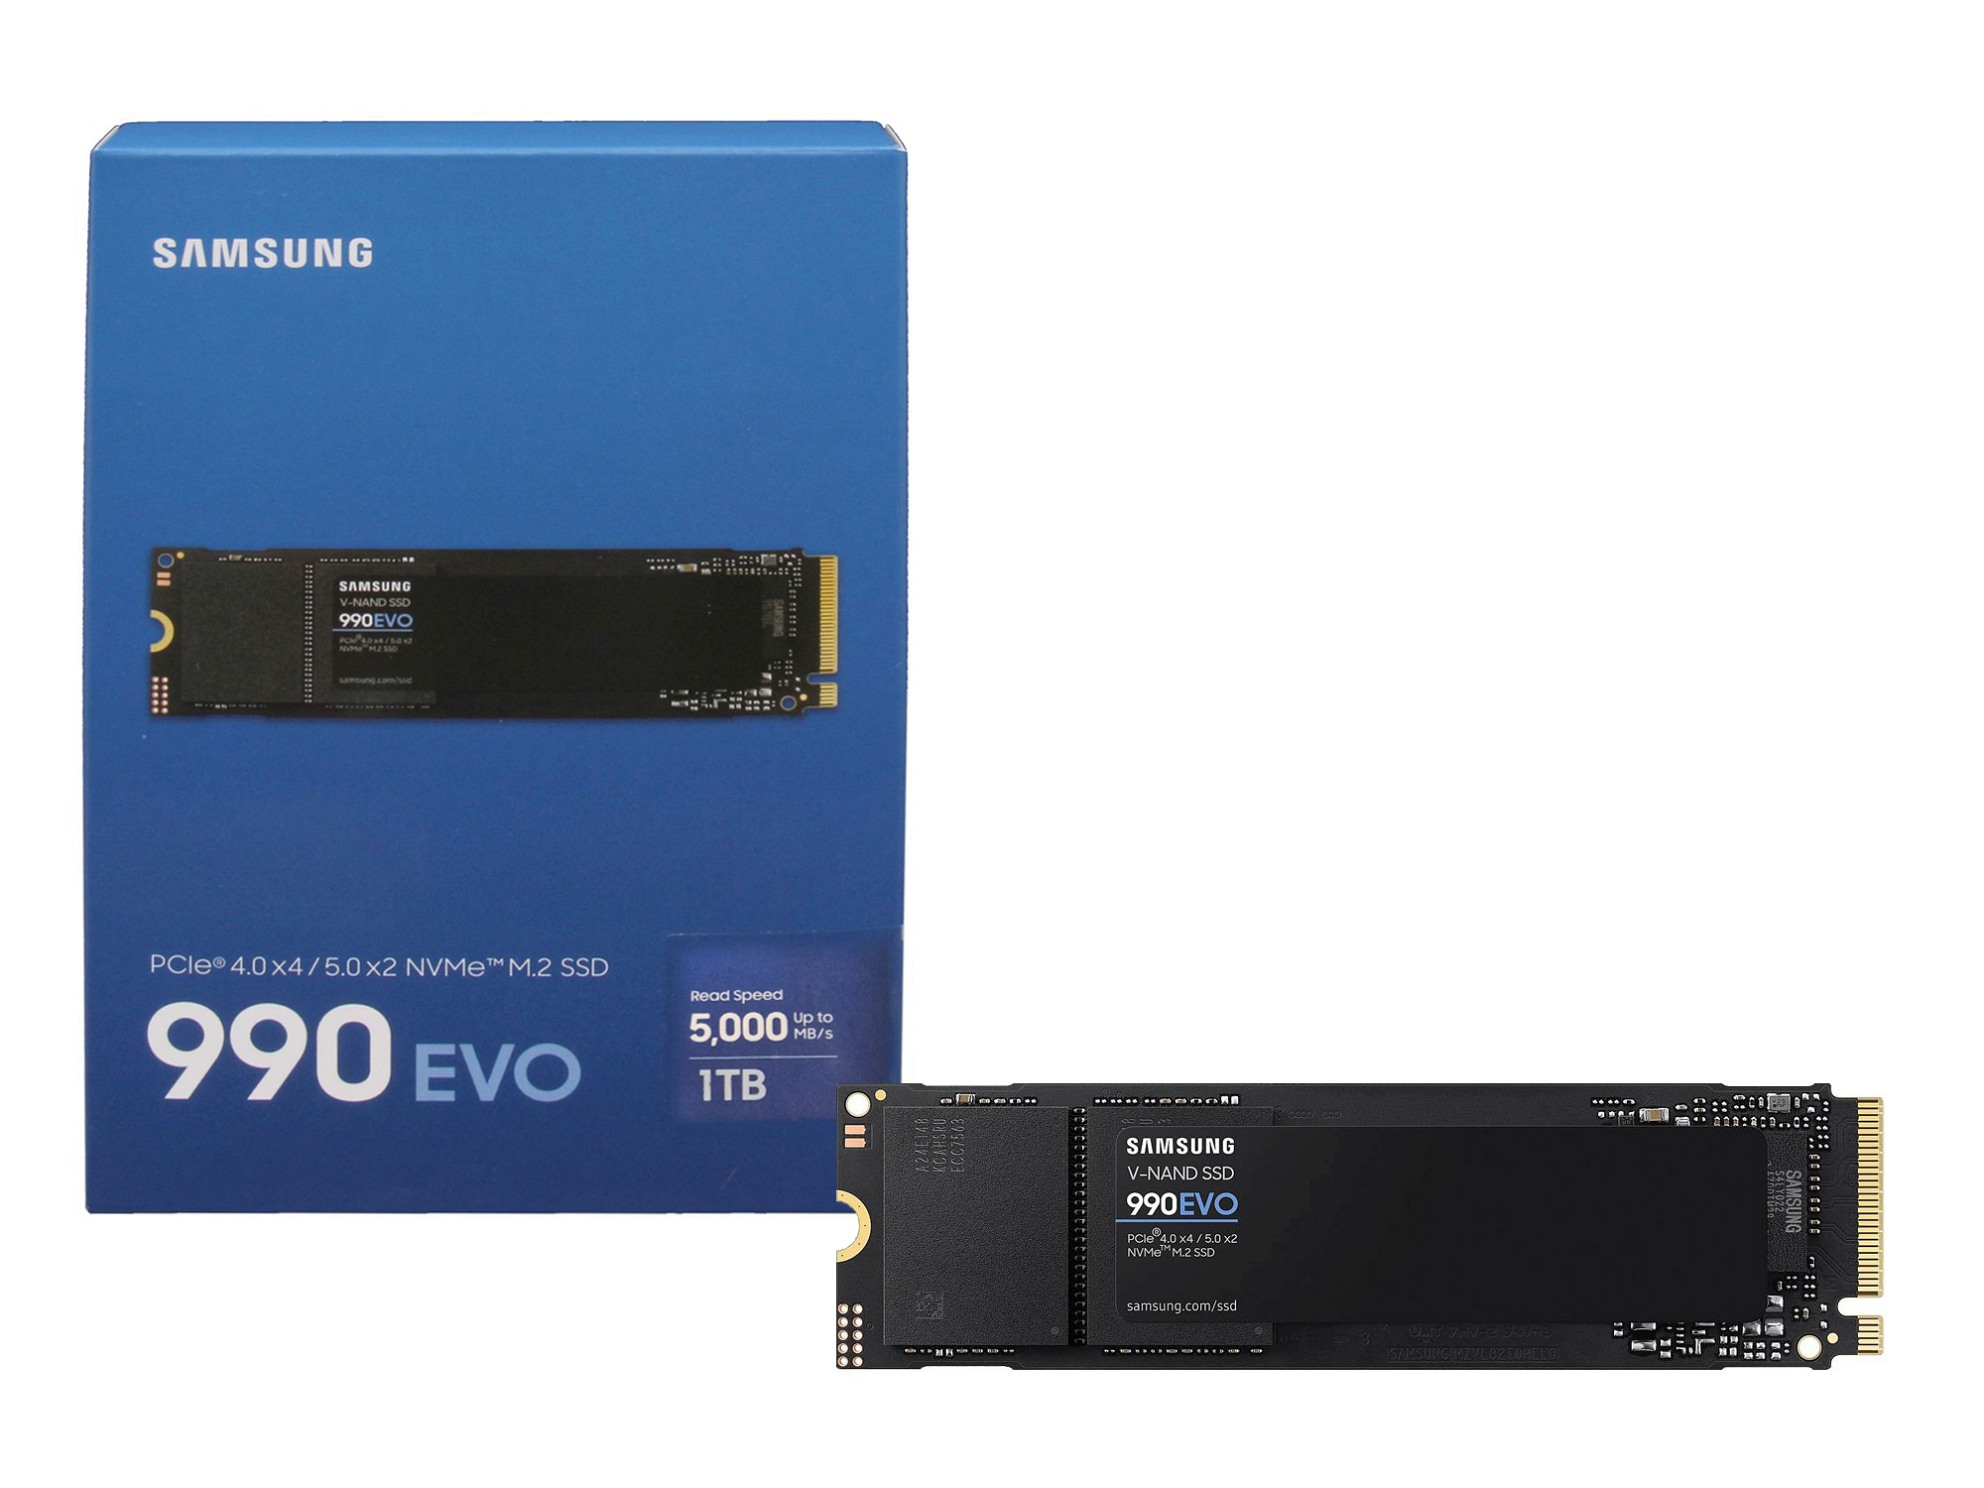 Samsung EUI64002538214142068B Samsung 990 EVO SSD Festplatte 1TB (M.2 22 x 80 mm)